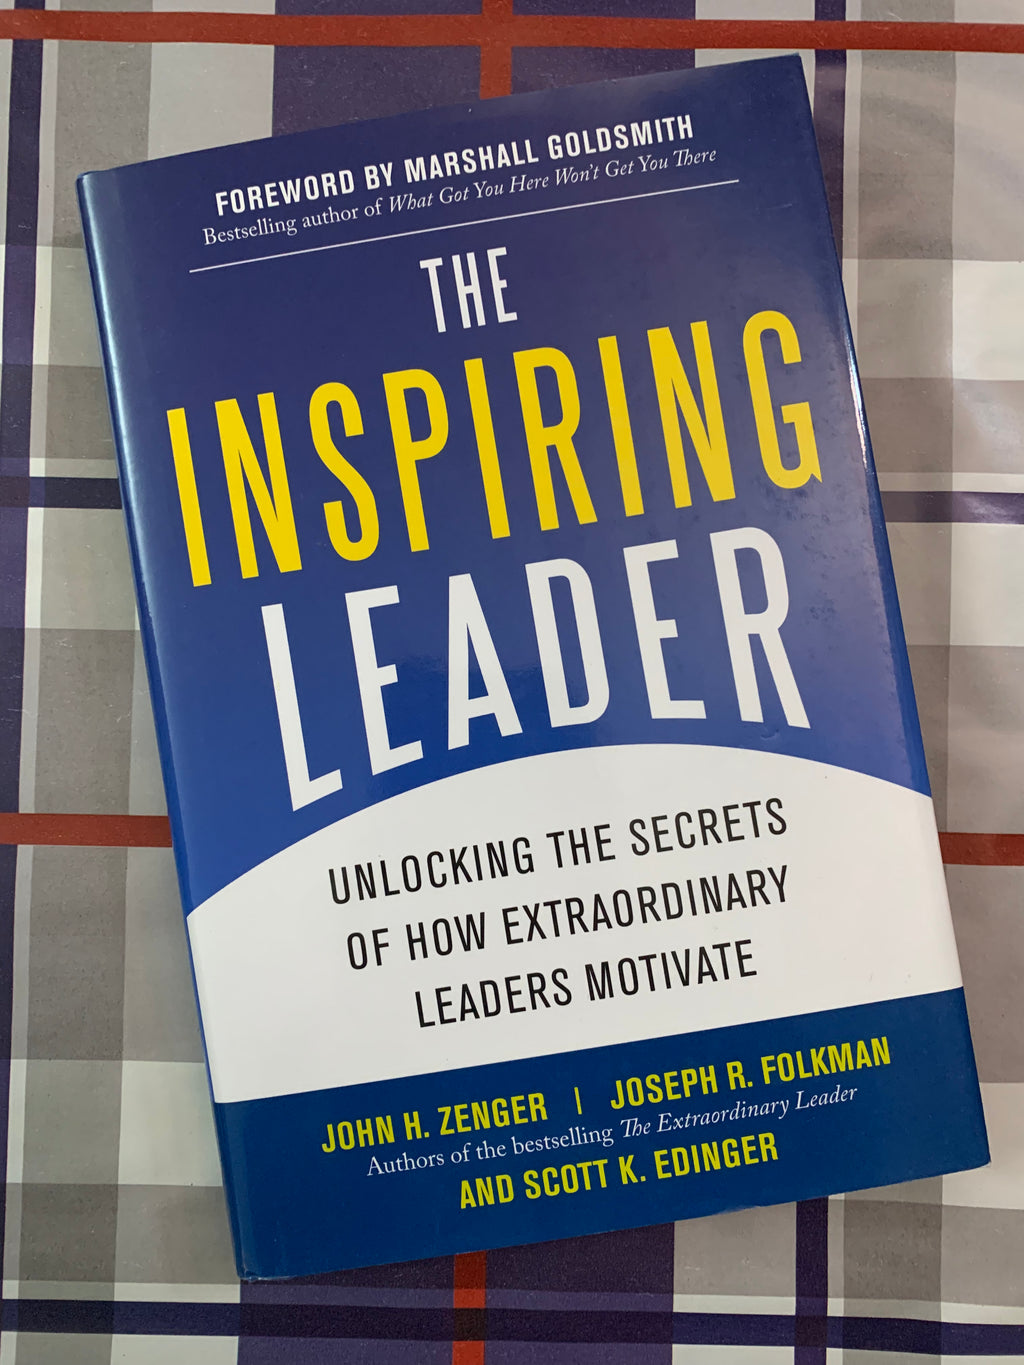 The Inspiring Leader: Unlocking the Secrets of How Extraordinary Leaders Motivate- By John H. Zenger, Joseph R. Folkman, and Scott K. Edinger